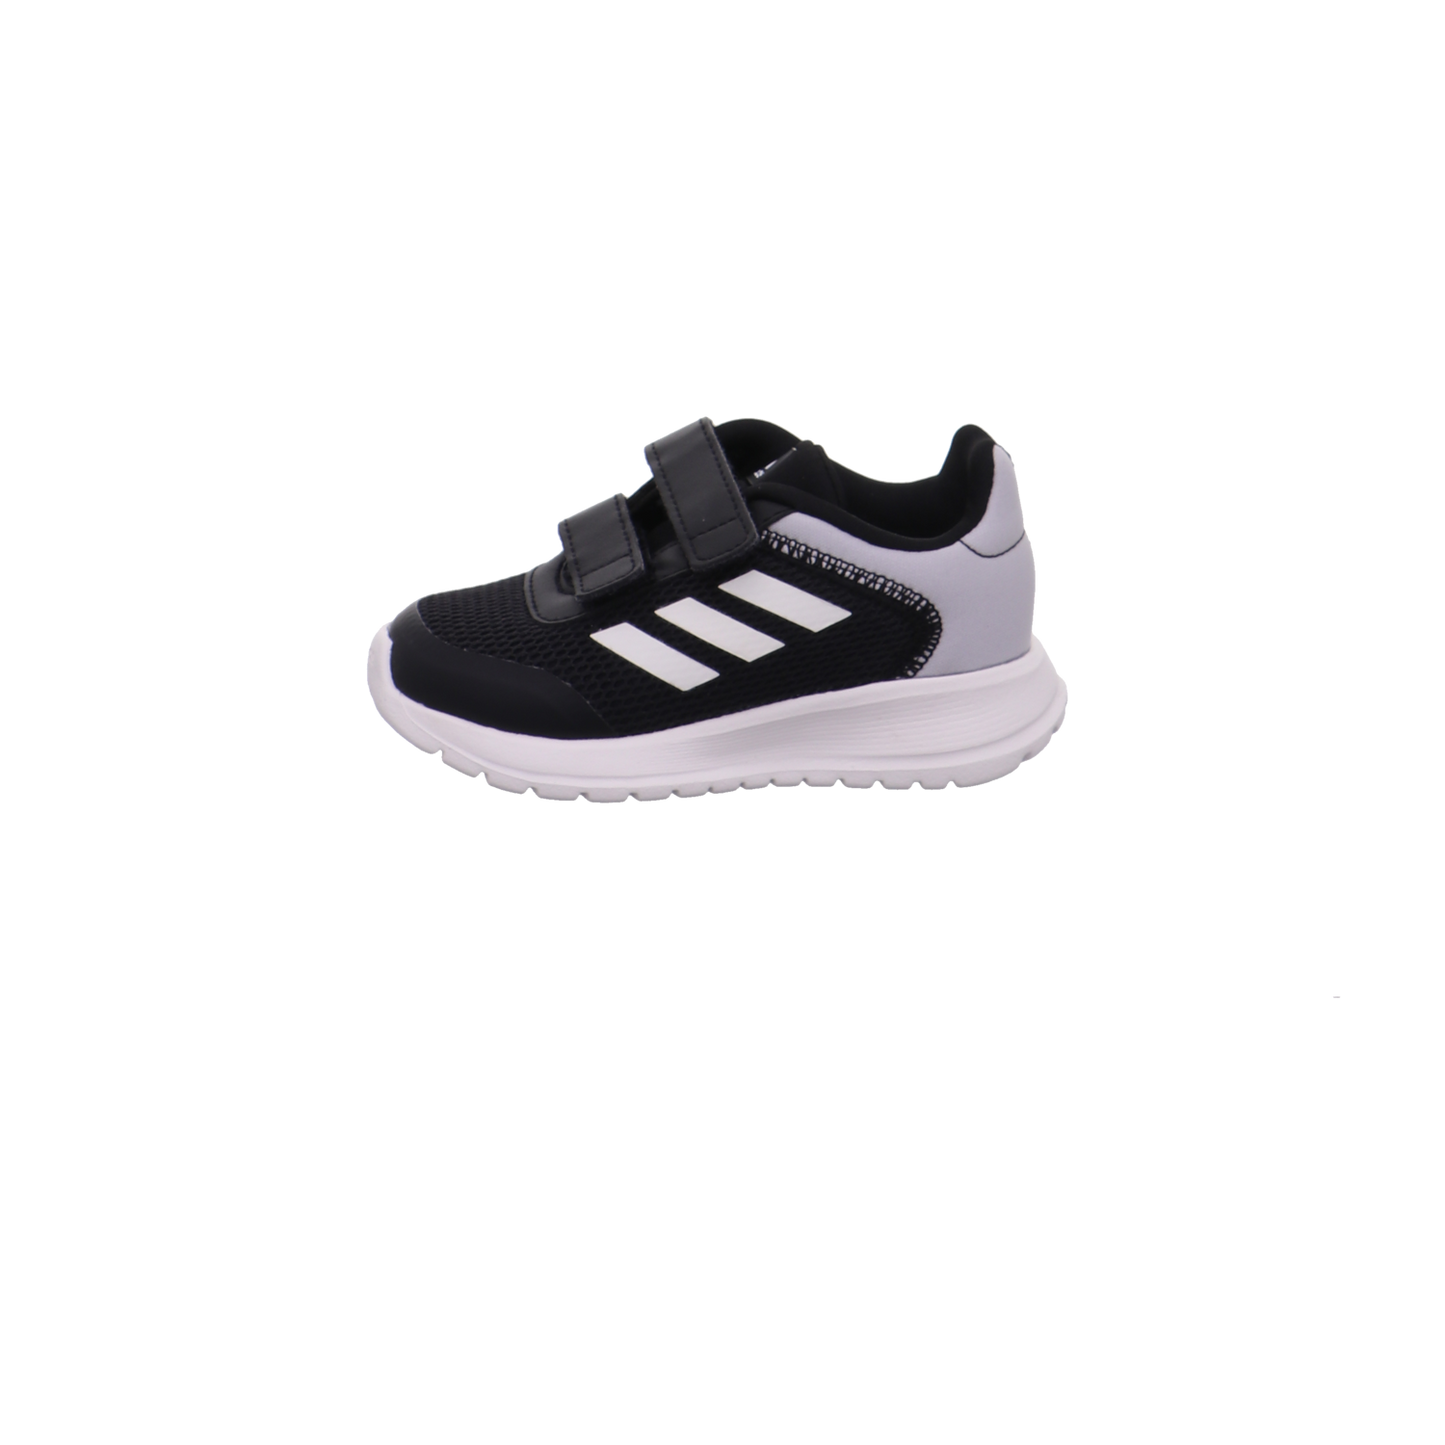 Adidas Halbschuhe schwarz-weiß Bild1